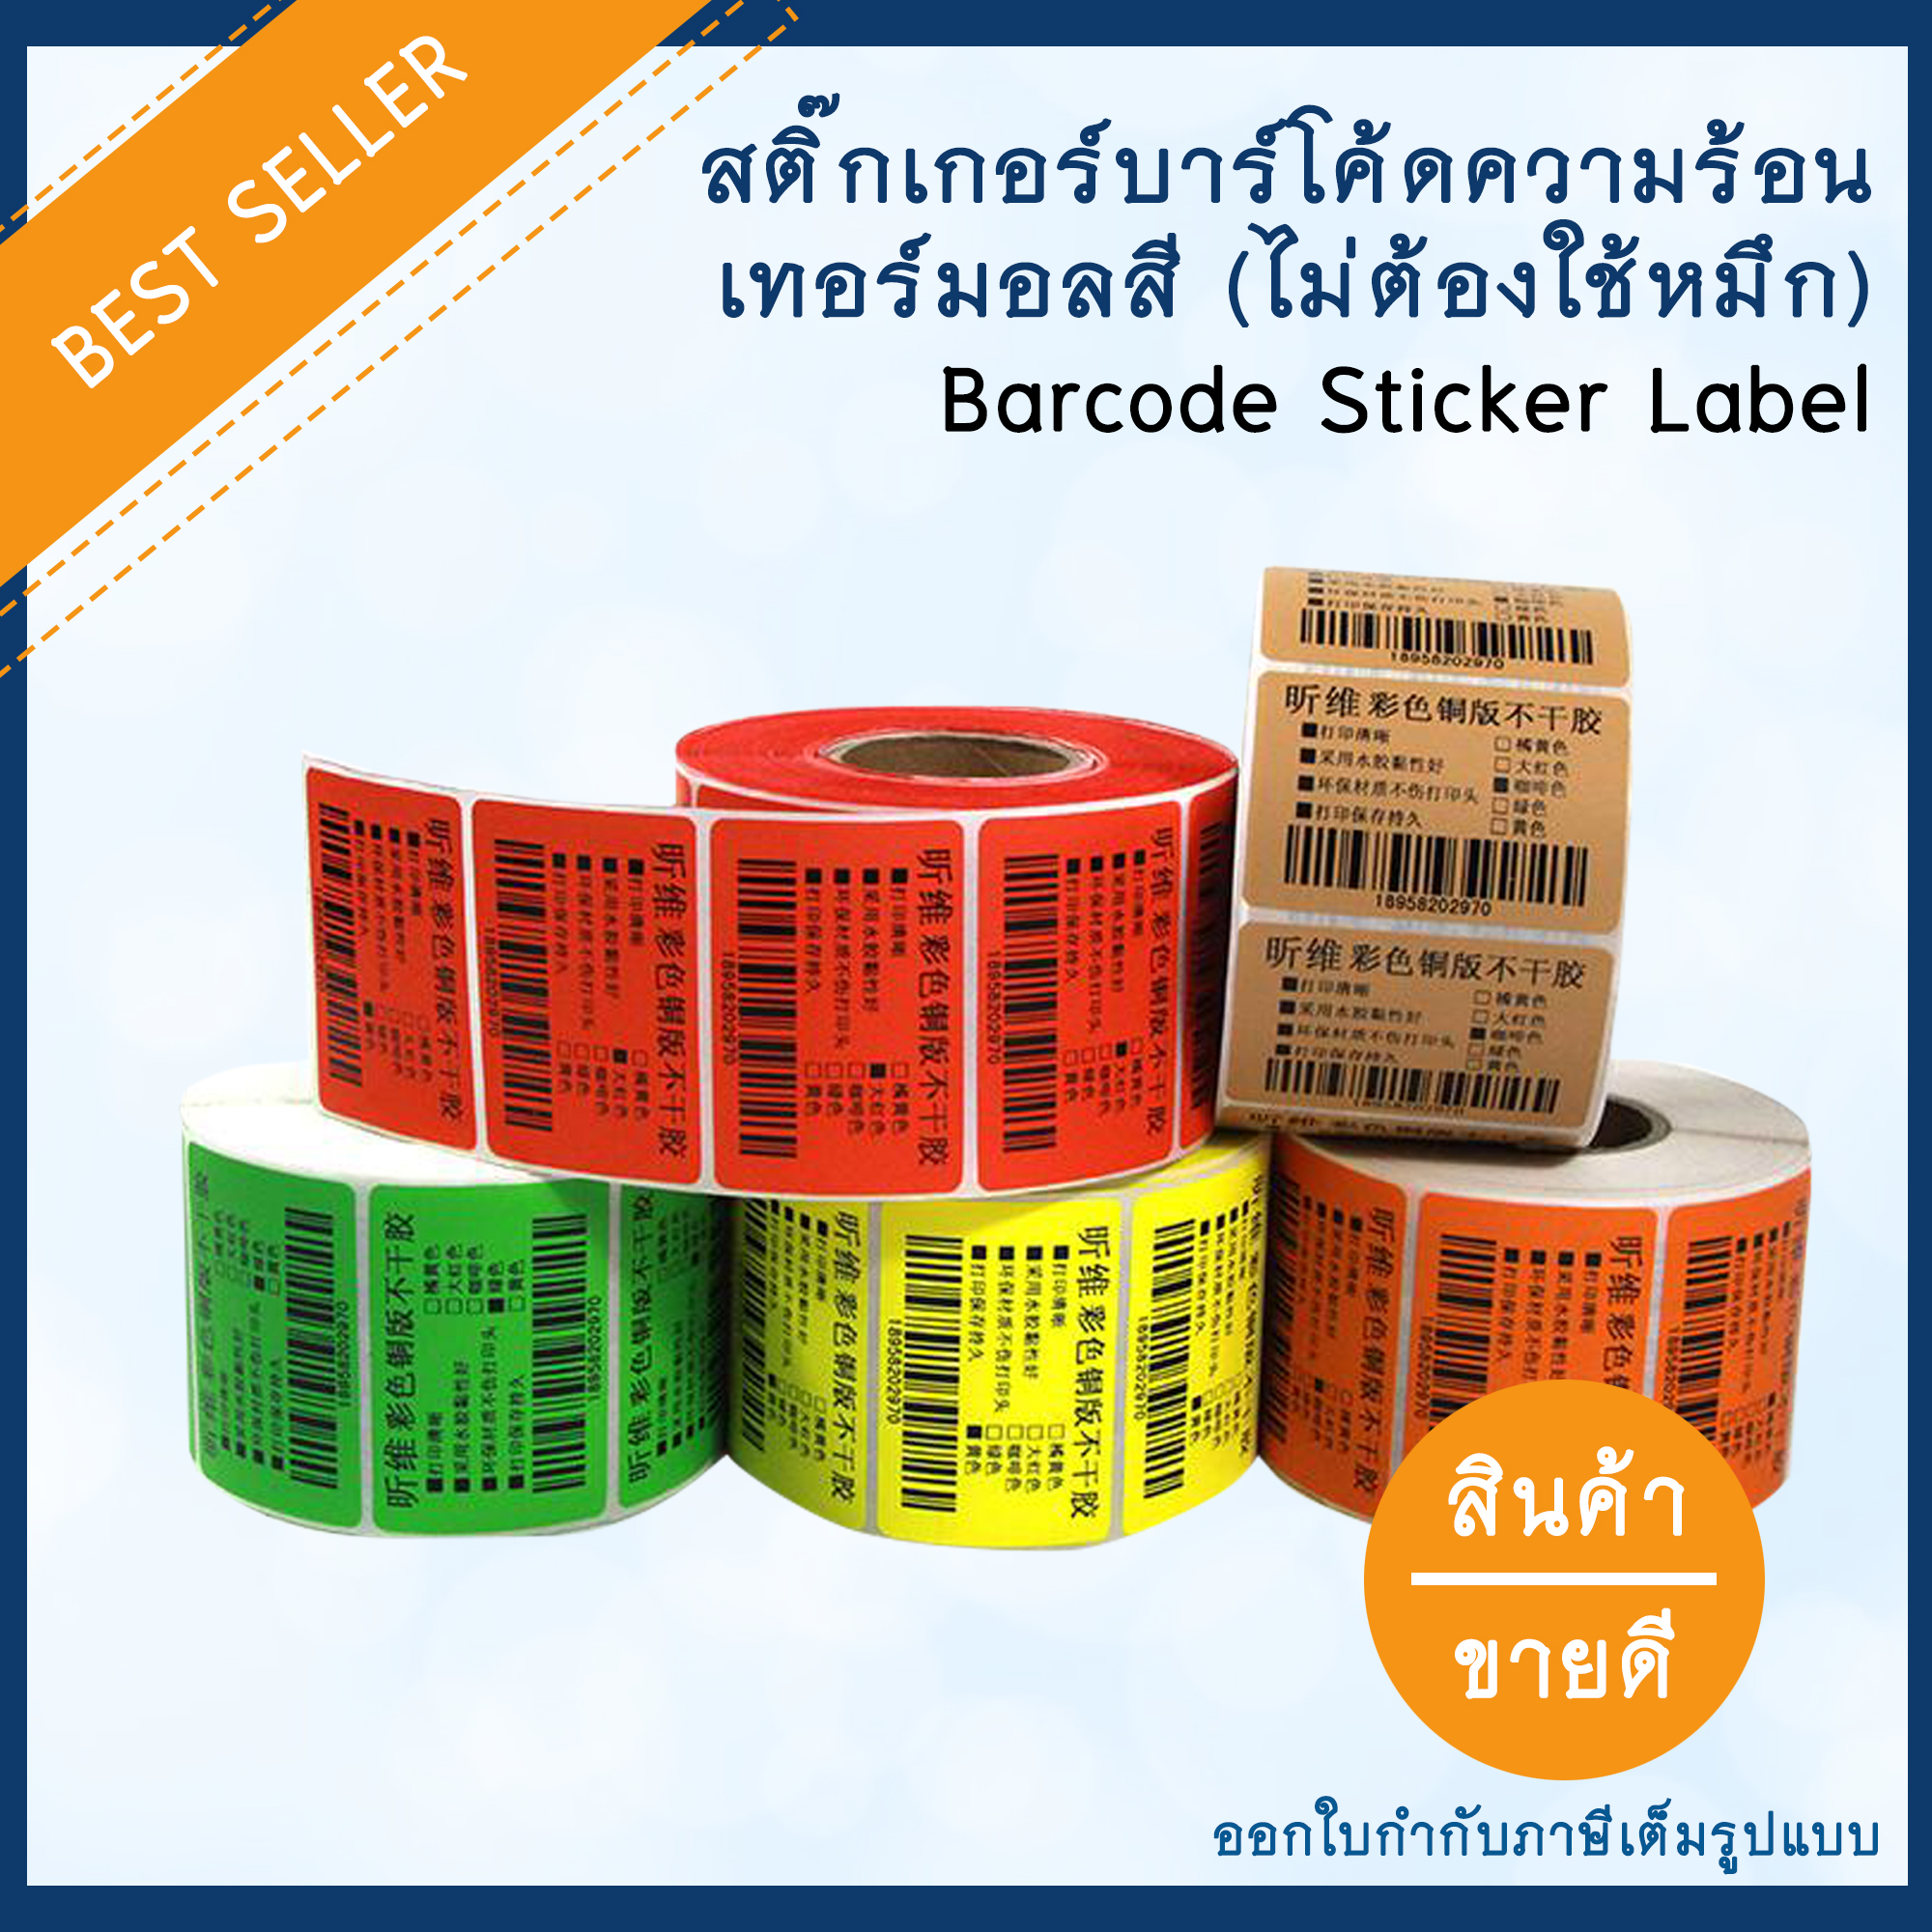 (สีเหลือง) สติ๊กเกอร์บาร์โค้ดความร้อนเทอร์มอลสี (ไม่ต้องใช้หมึก) Barcode Sticker Label สติ๊กเกอร์บาร์โค้ด / ป้ายสติ๊กเกอร์ / ฉลาก / ลาเบลม้วน ขนาดต่างๆ เพิ่มมูลค่าตัวสินค้าและทำให้ขายได้ง่ายขึ้น